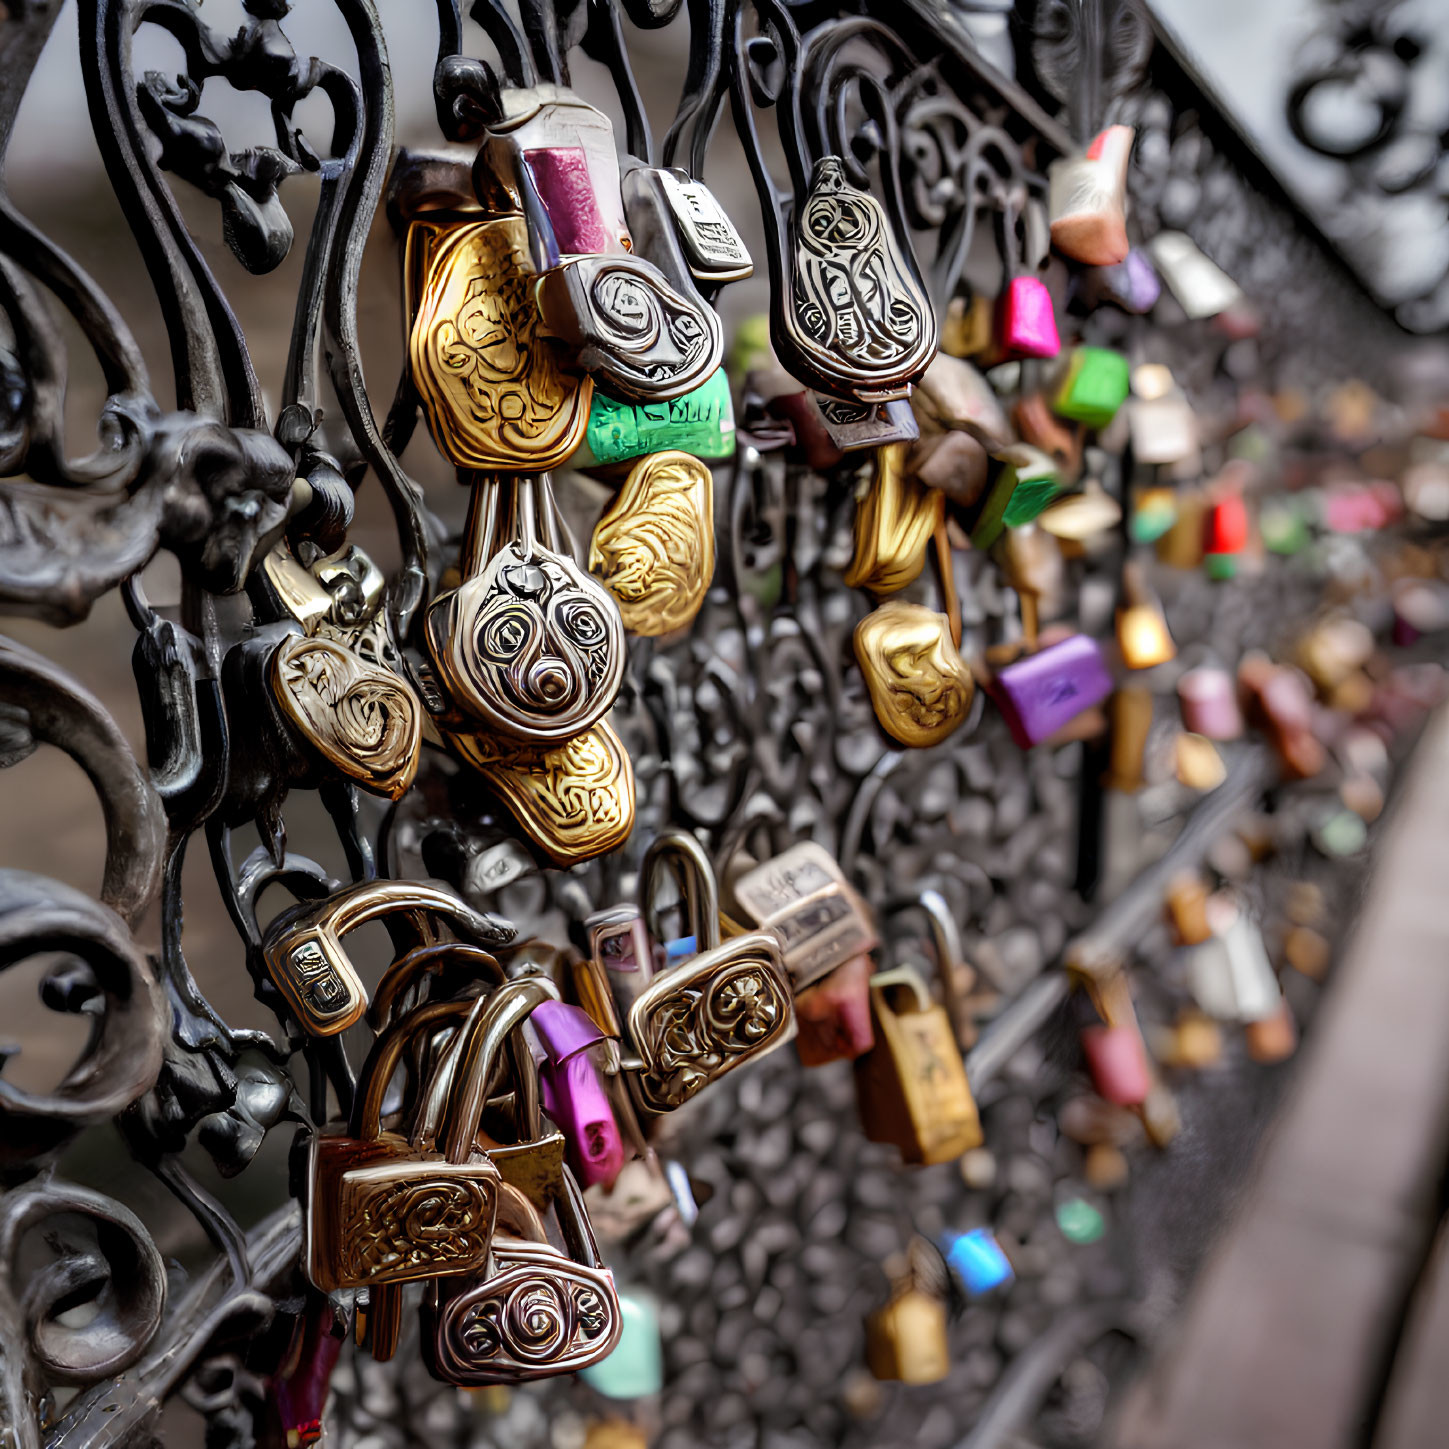 Assorted padlocks on bridge railing with ornate metalwork